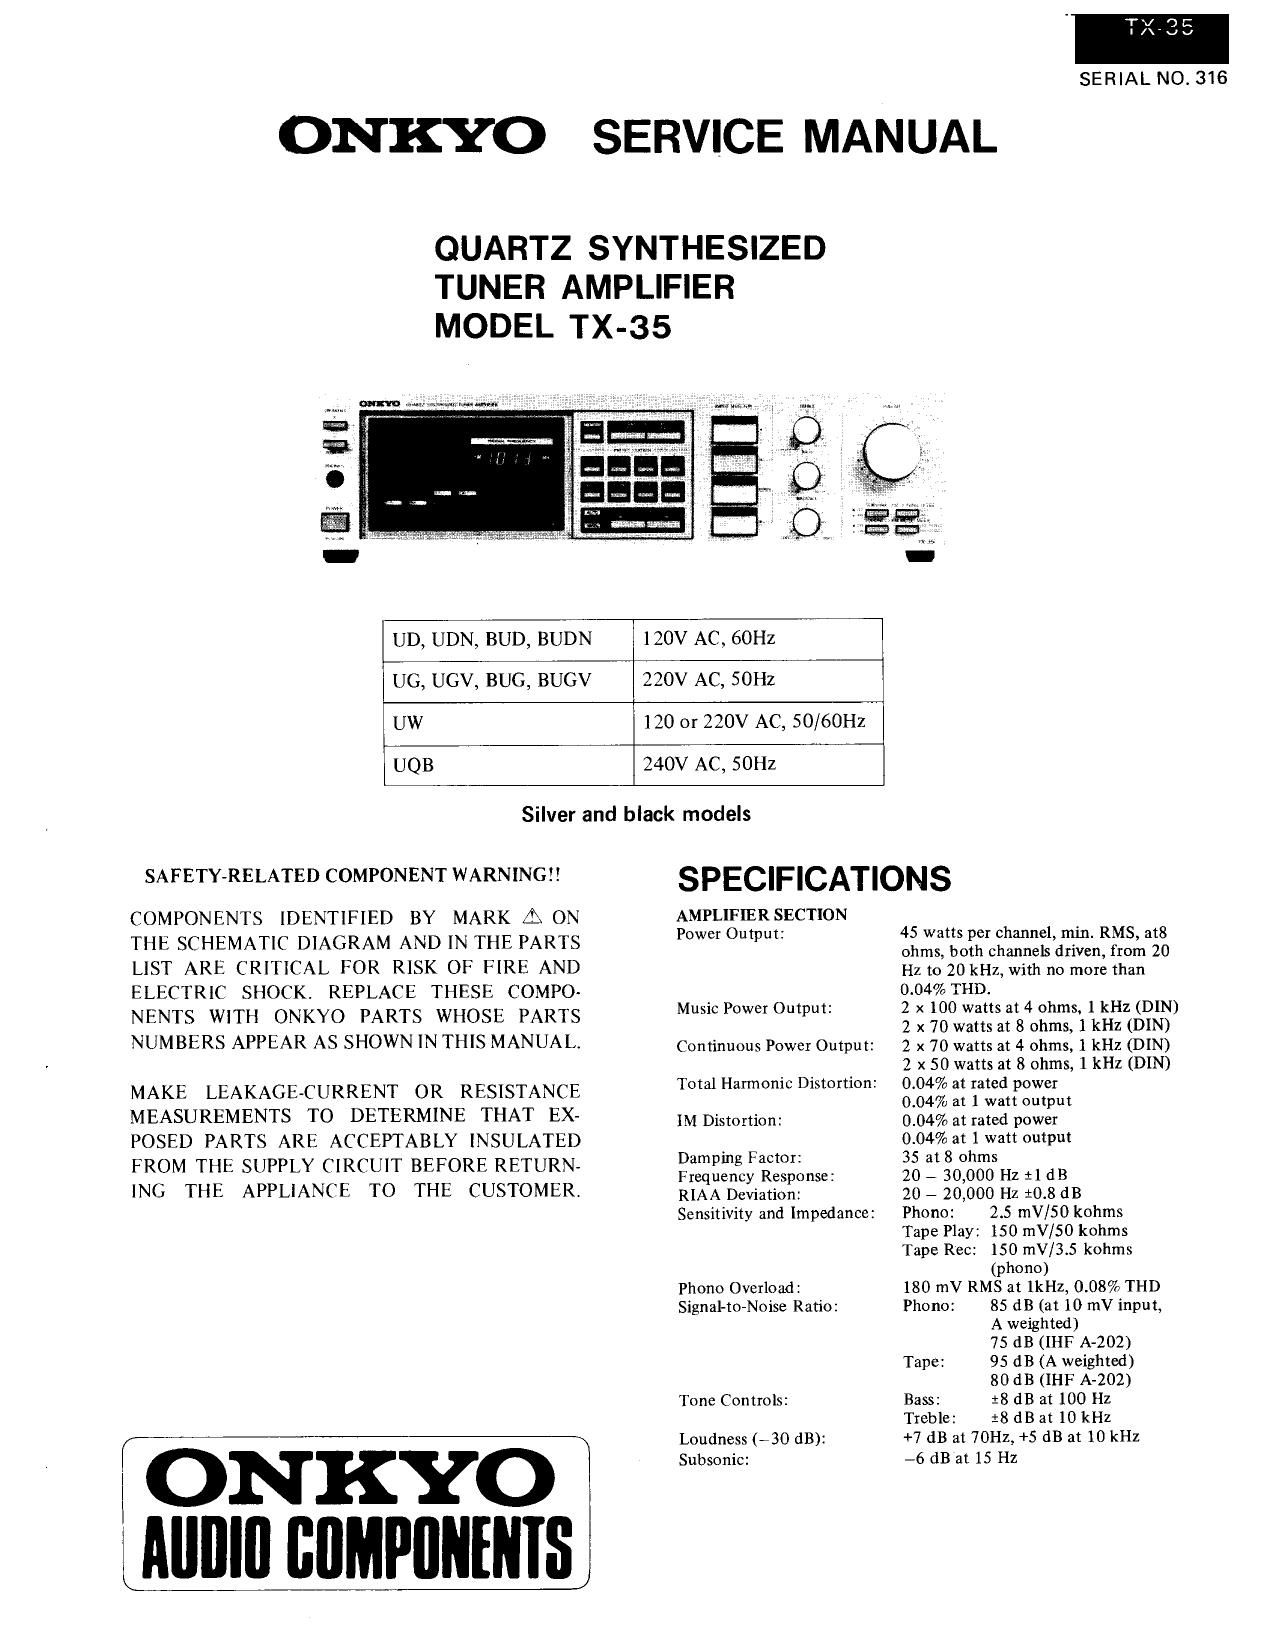 Onkyo TX 35 Service Manual